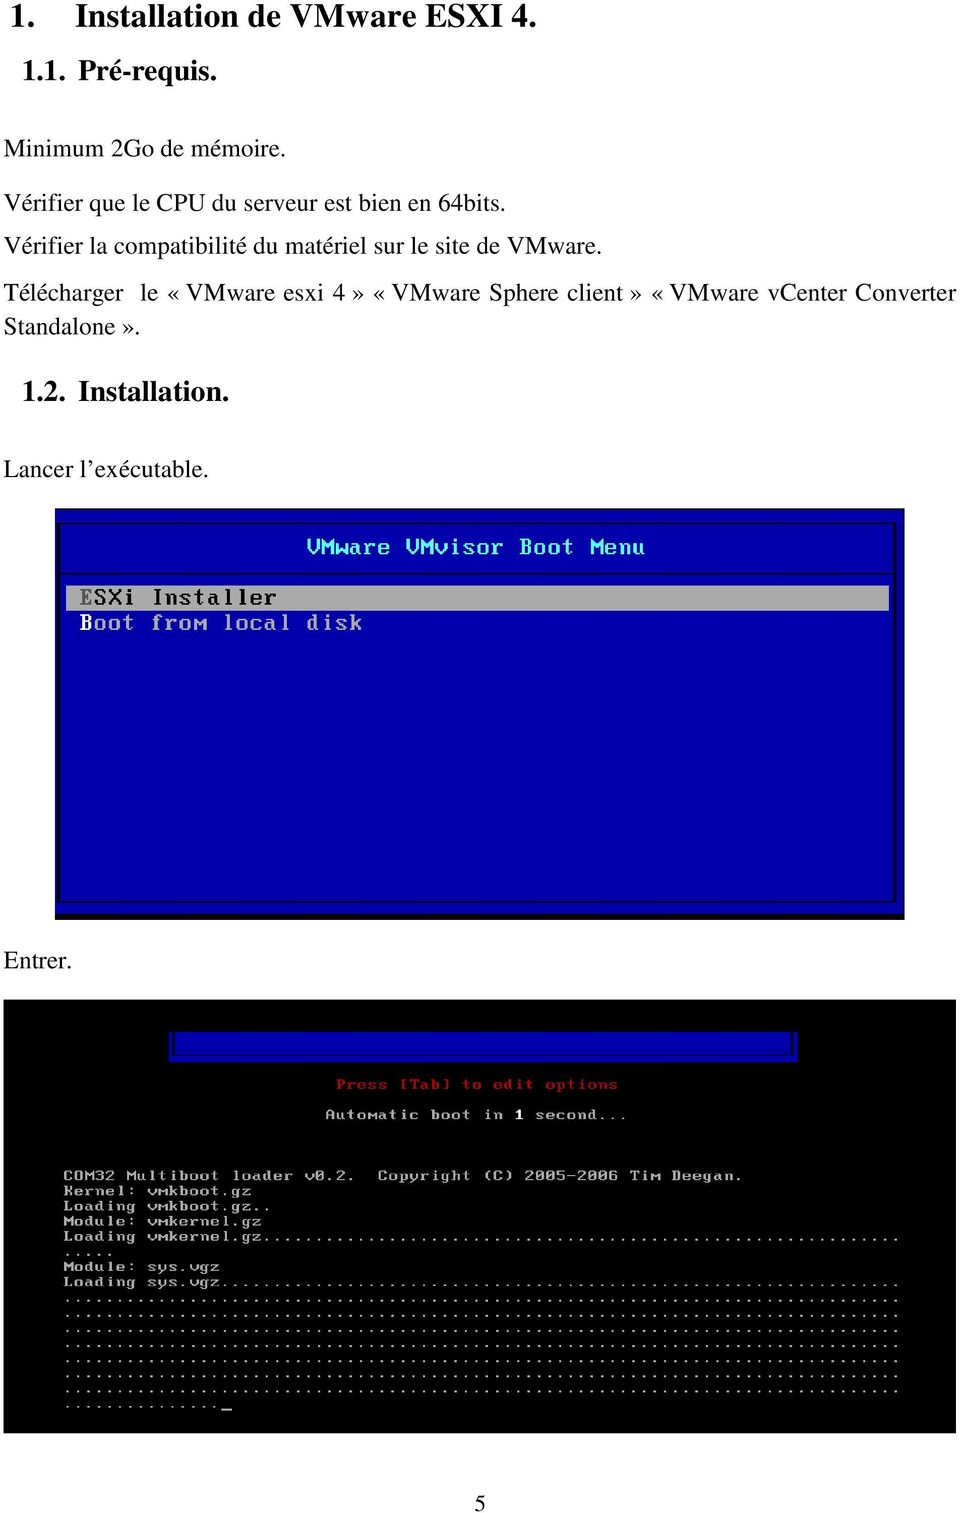 Vérifier la compatibilité du matériel sur le site de VMware.